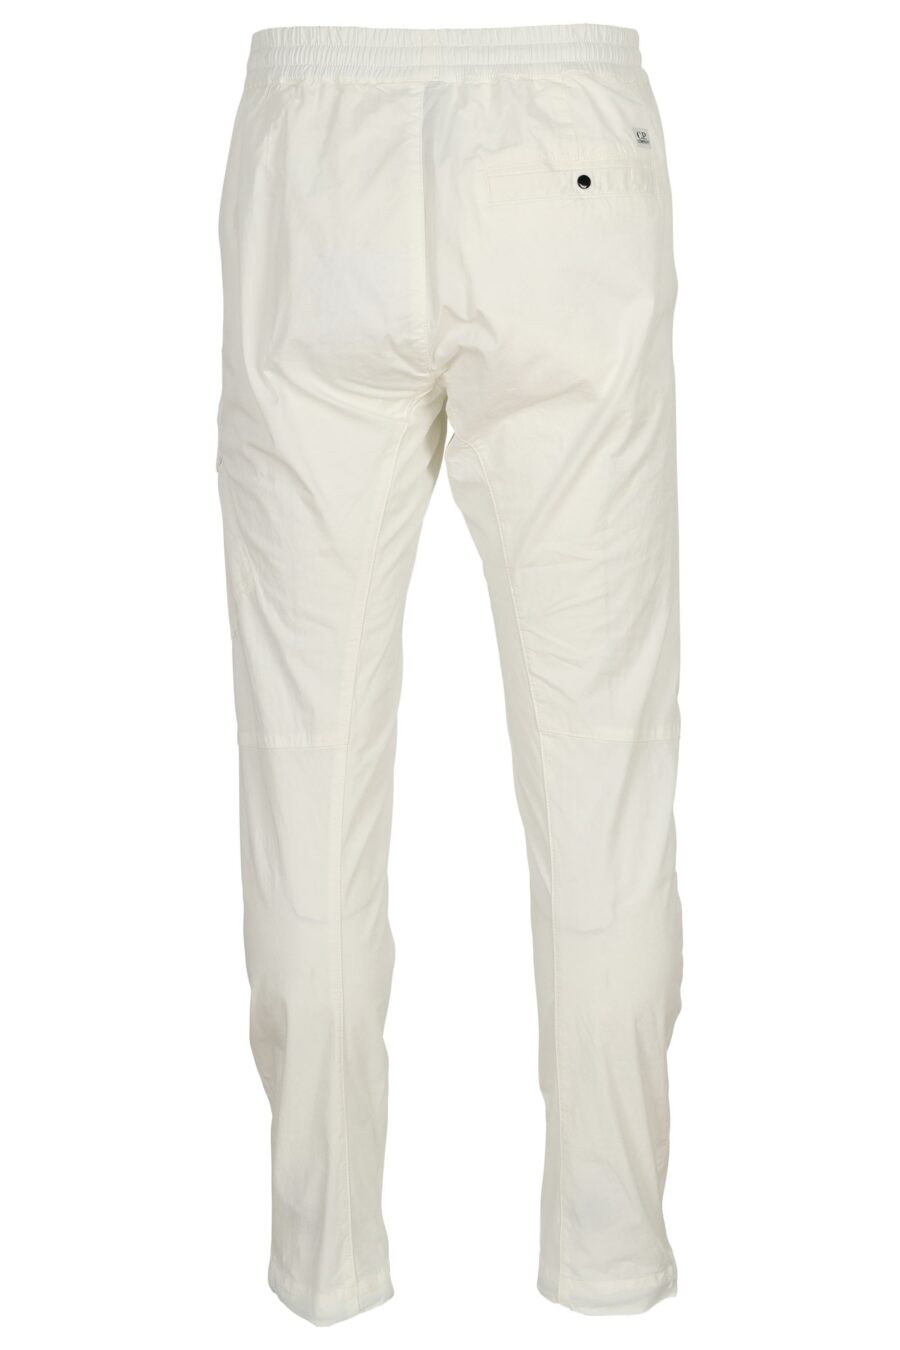 White cargo trousers with lens mini-logo - 7620943804751 2